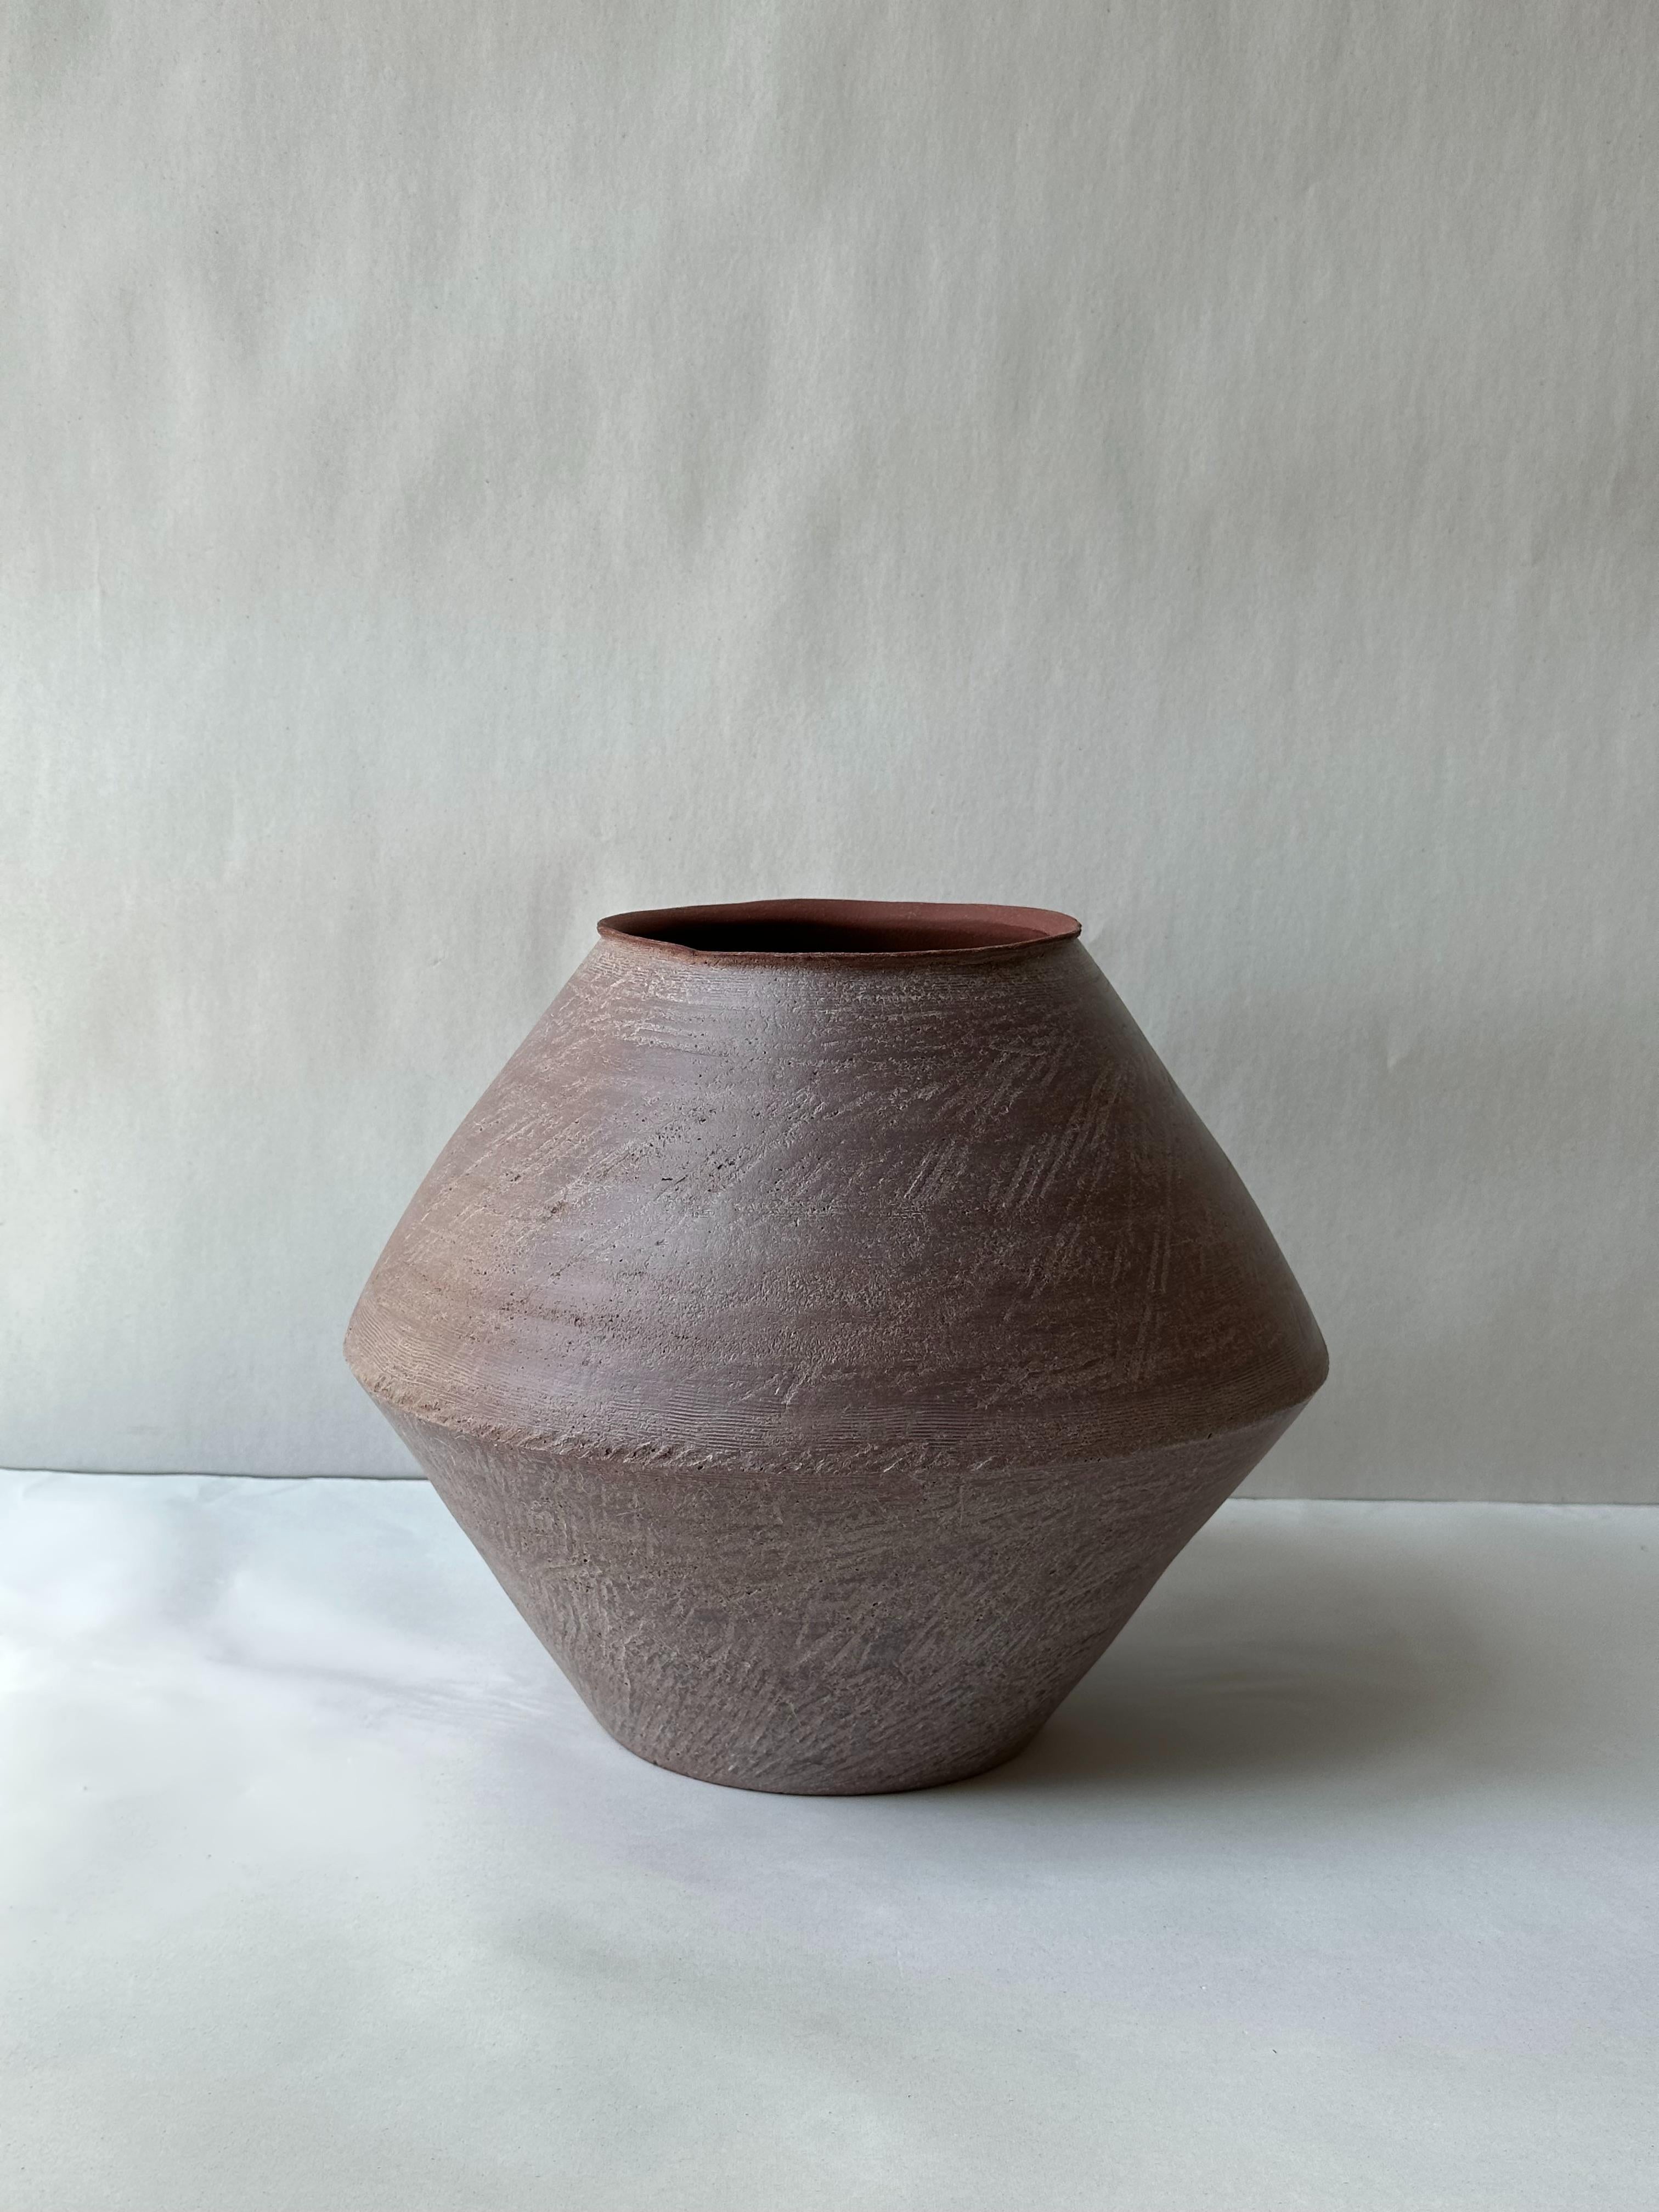 Other Red Stoneware Sfondyli I Vase by Elena Vasilantonaki For Sale